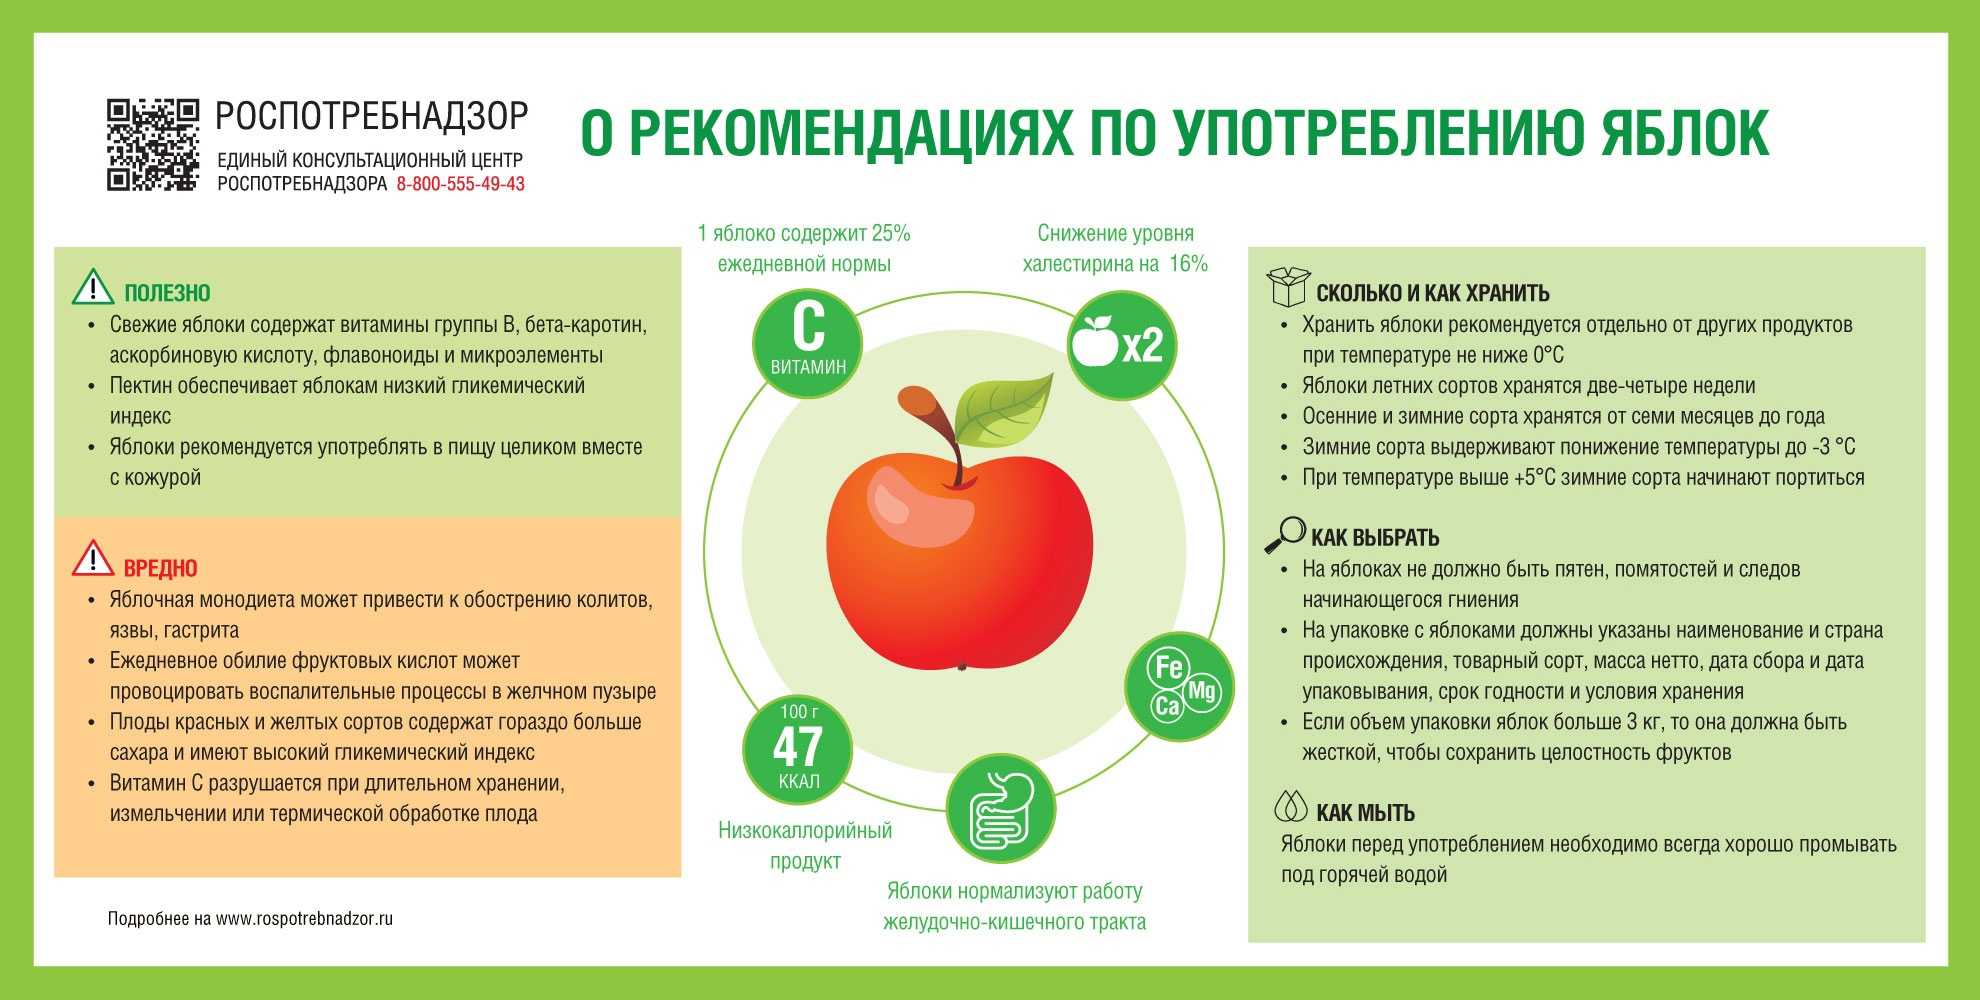 Яблоко: сорта, польза и калорийность | food and health